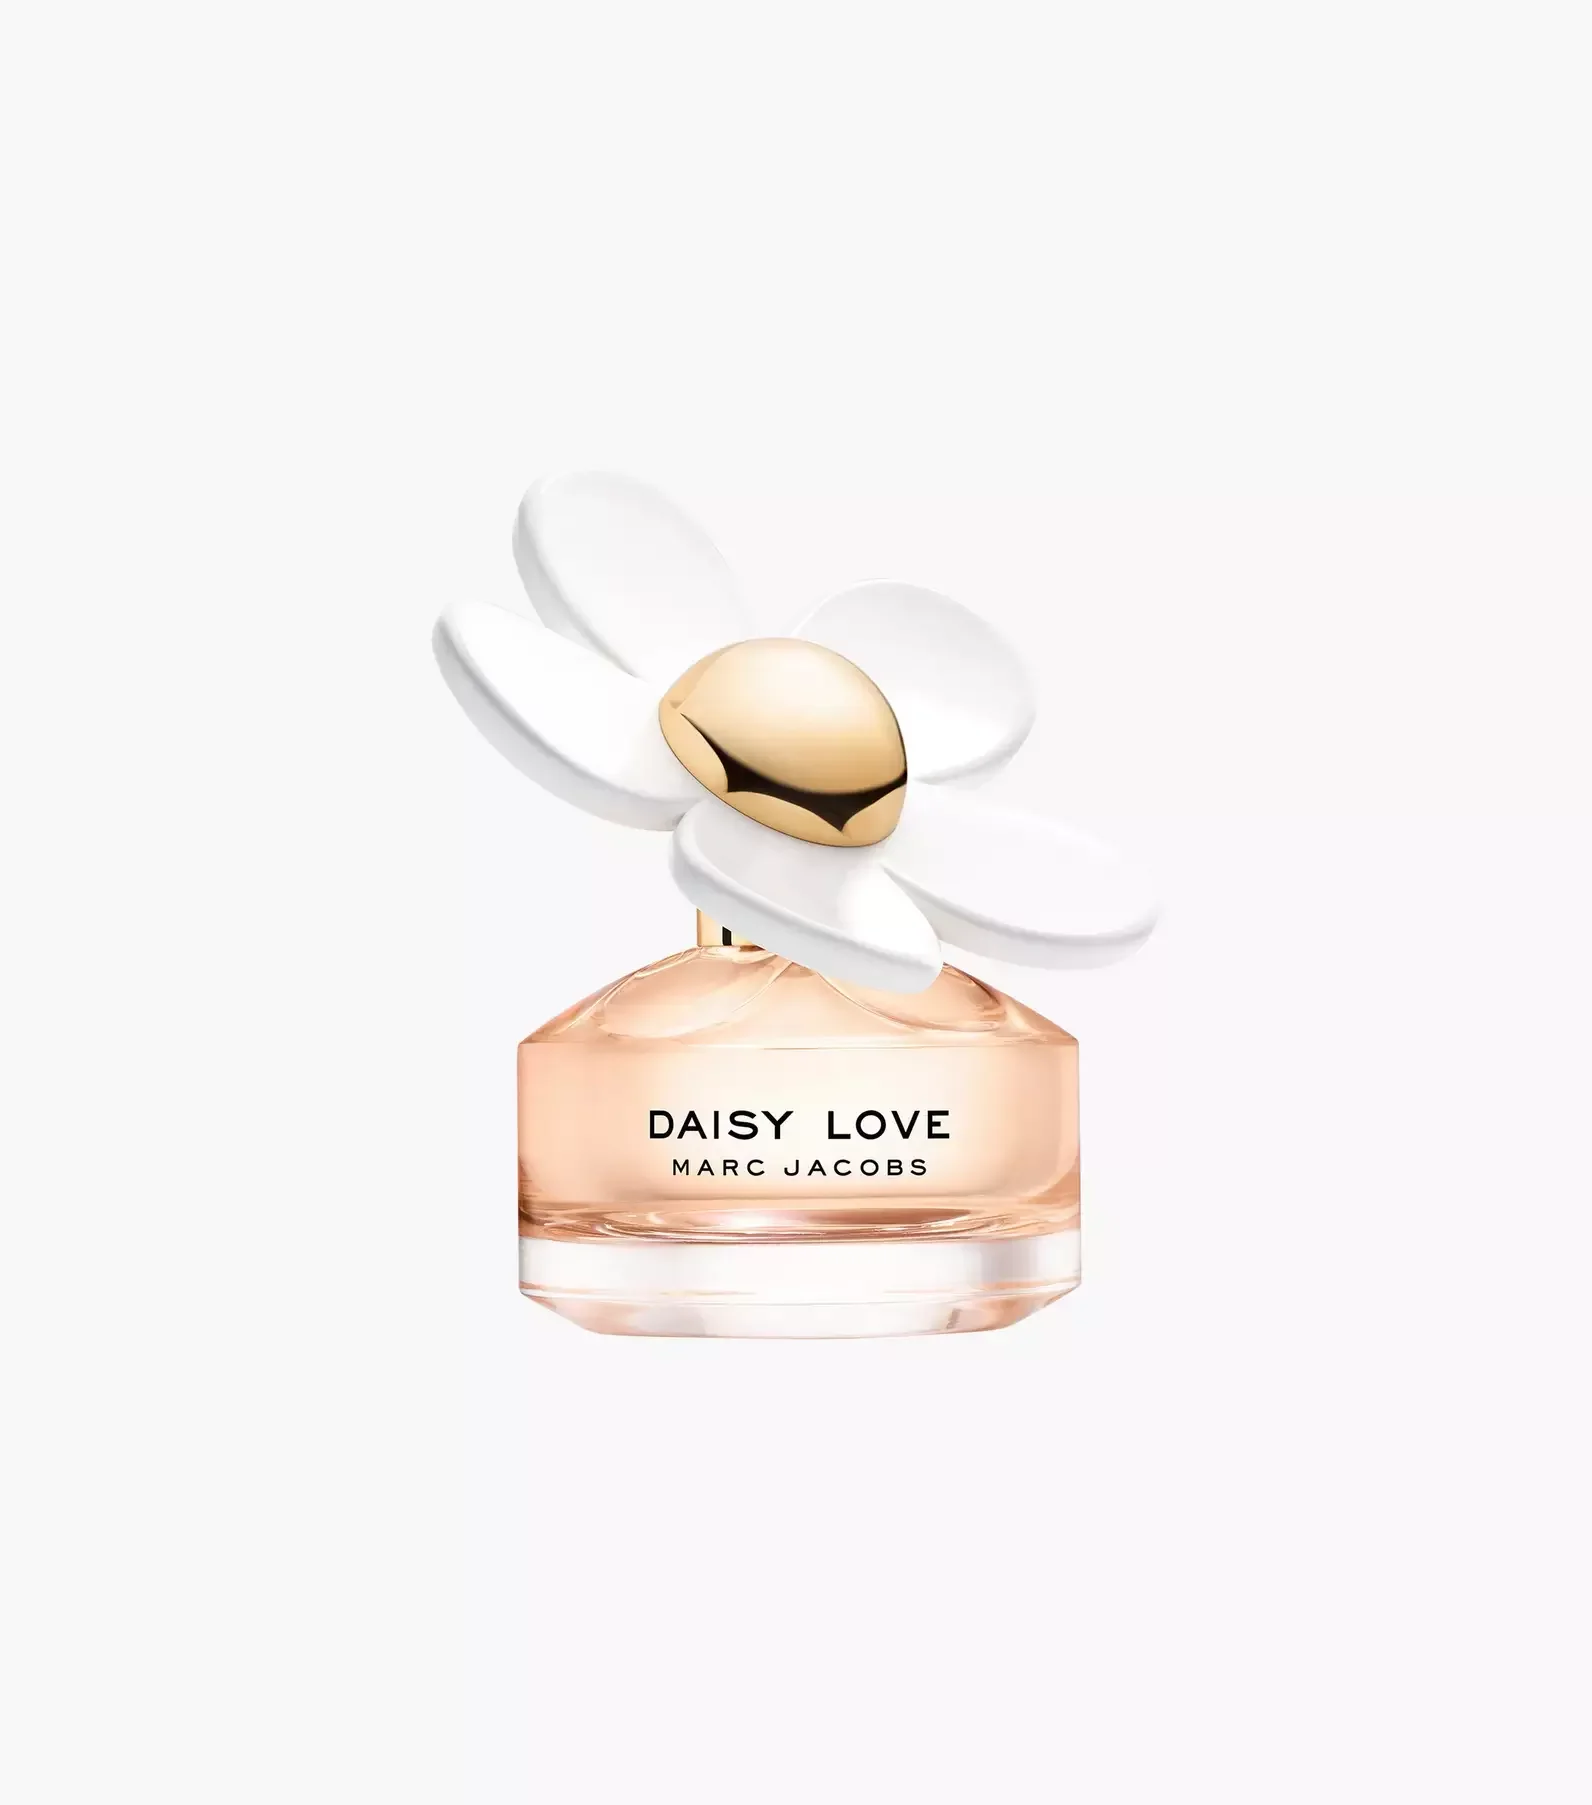 Perfume Marc Jacobs Daisy Love 100ml Eau de Toilette - 2